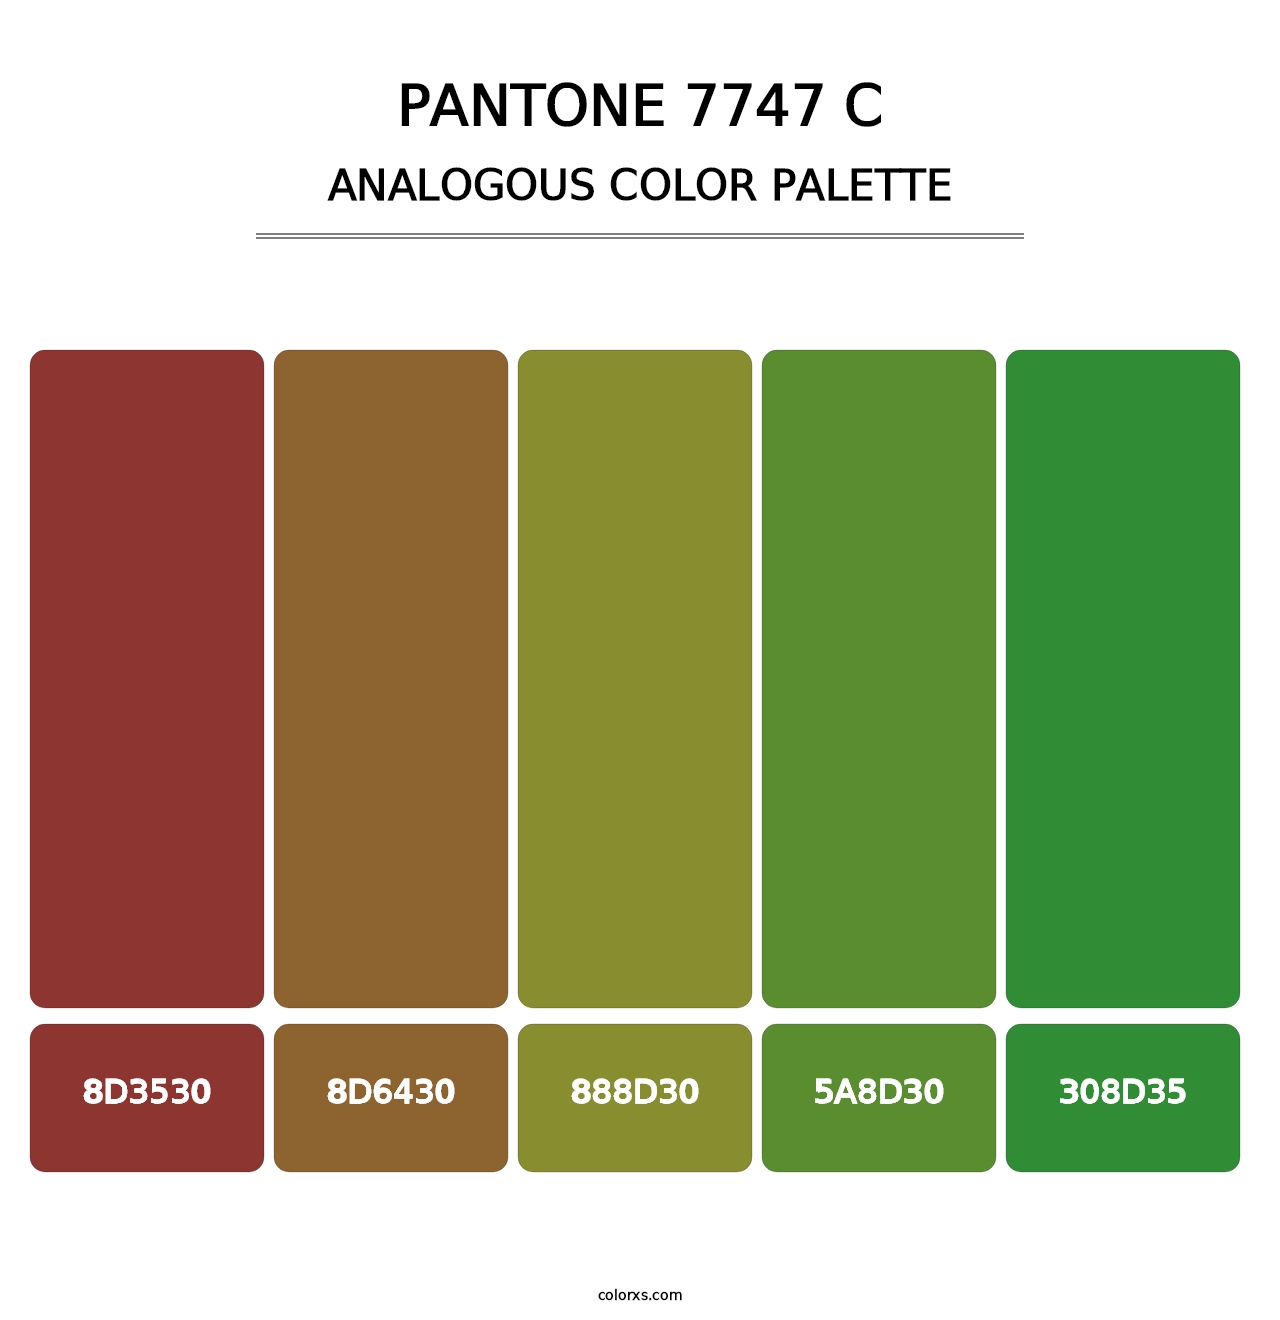 PANTONE 7747 C - Analogous Color Palette